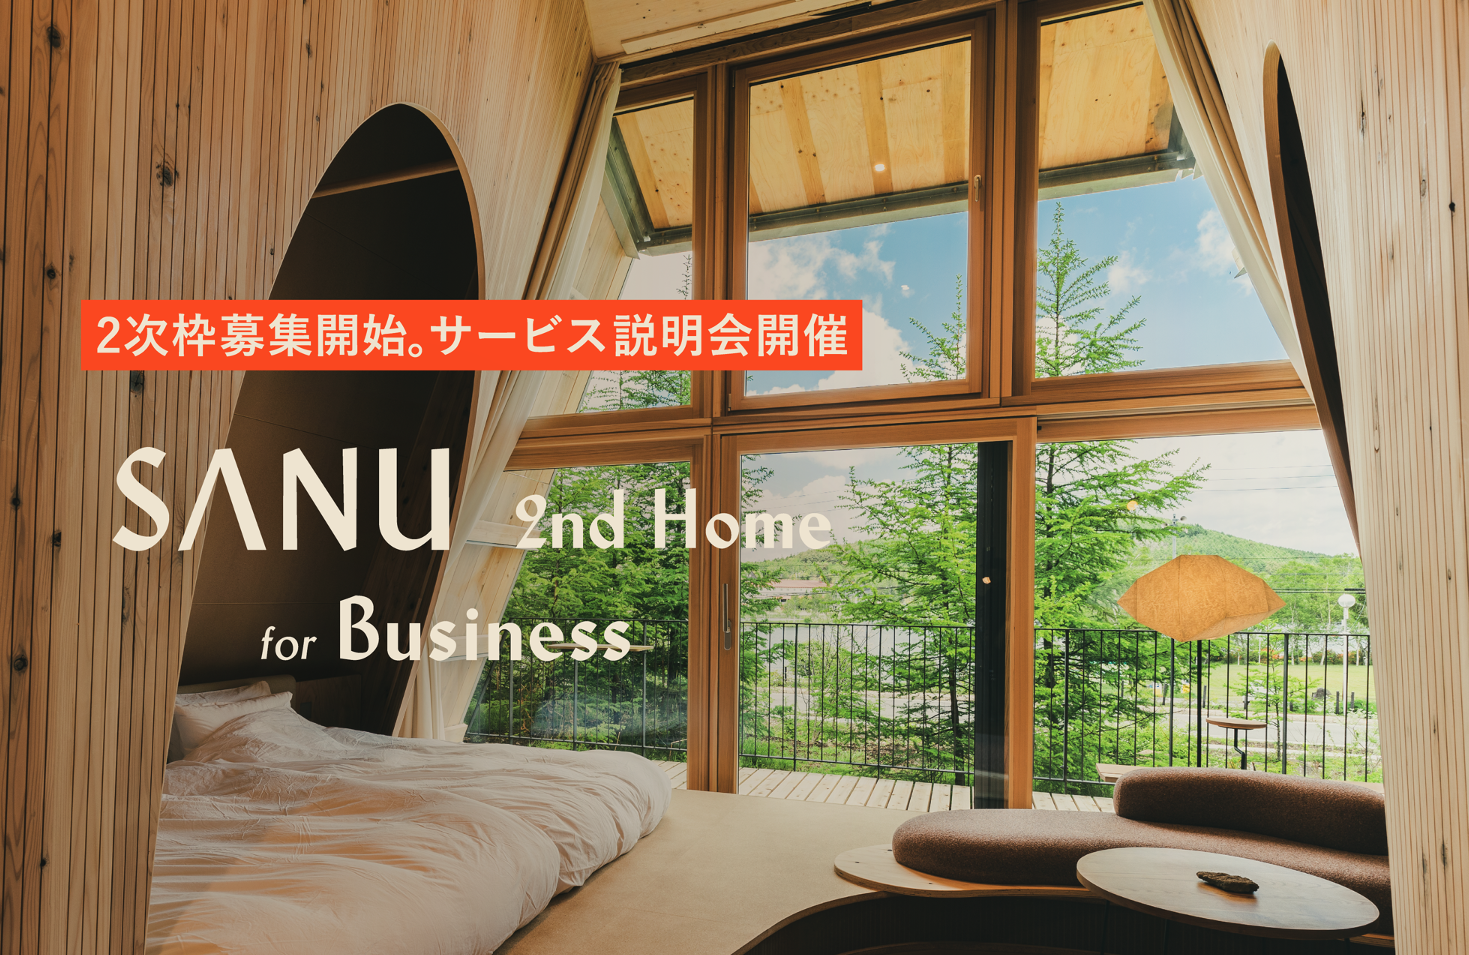 法人向けサービス「SANU 2nd Home for Business 」1次枠完売、秋から